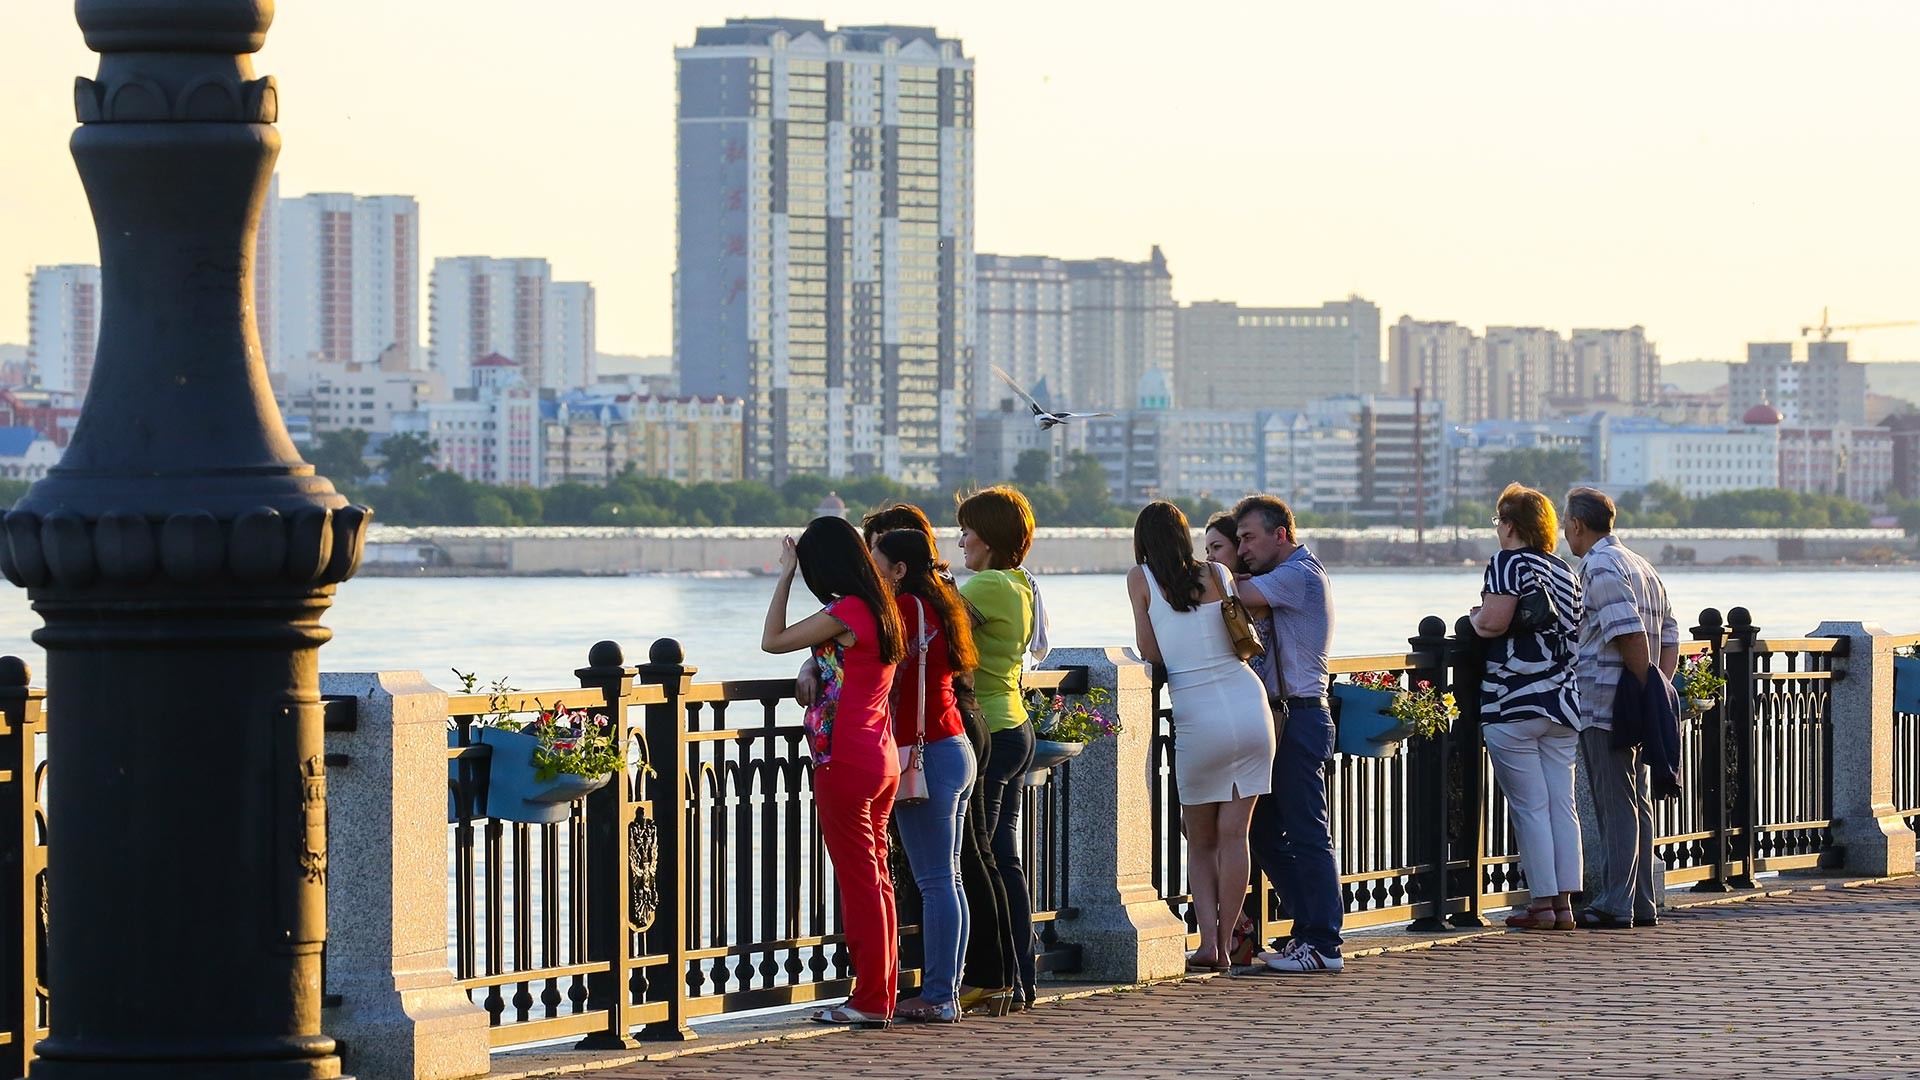 Blagoveshchensk, vista sul fiume Amur, oltre il quale si stagliano i palazzi della città cinese Heihe